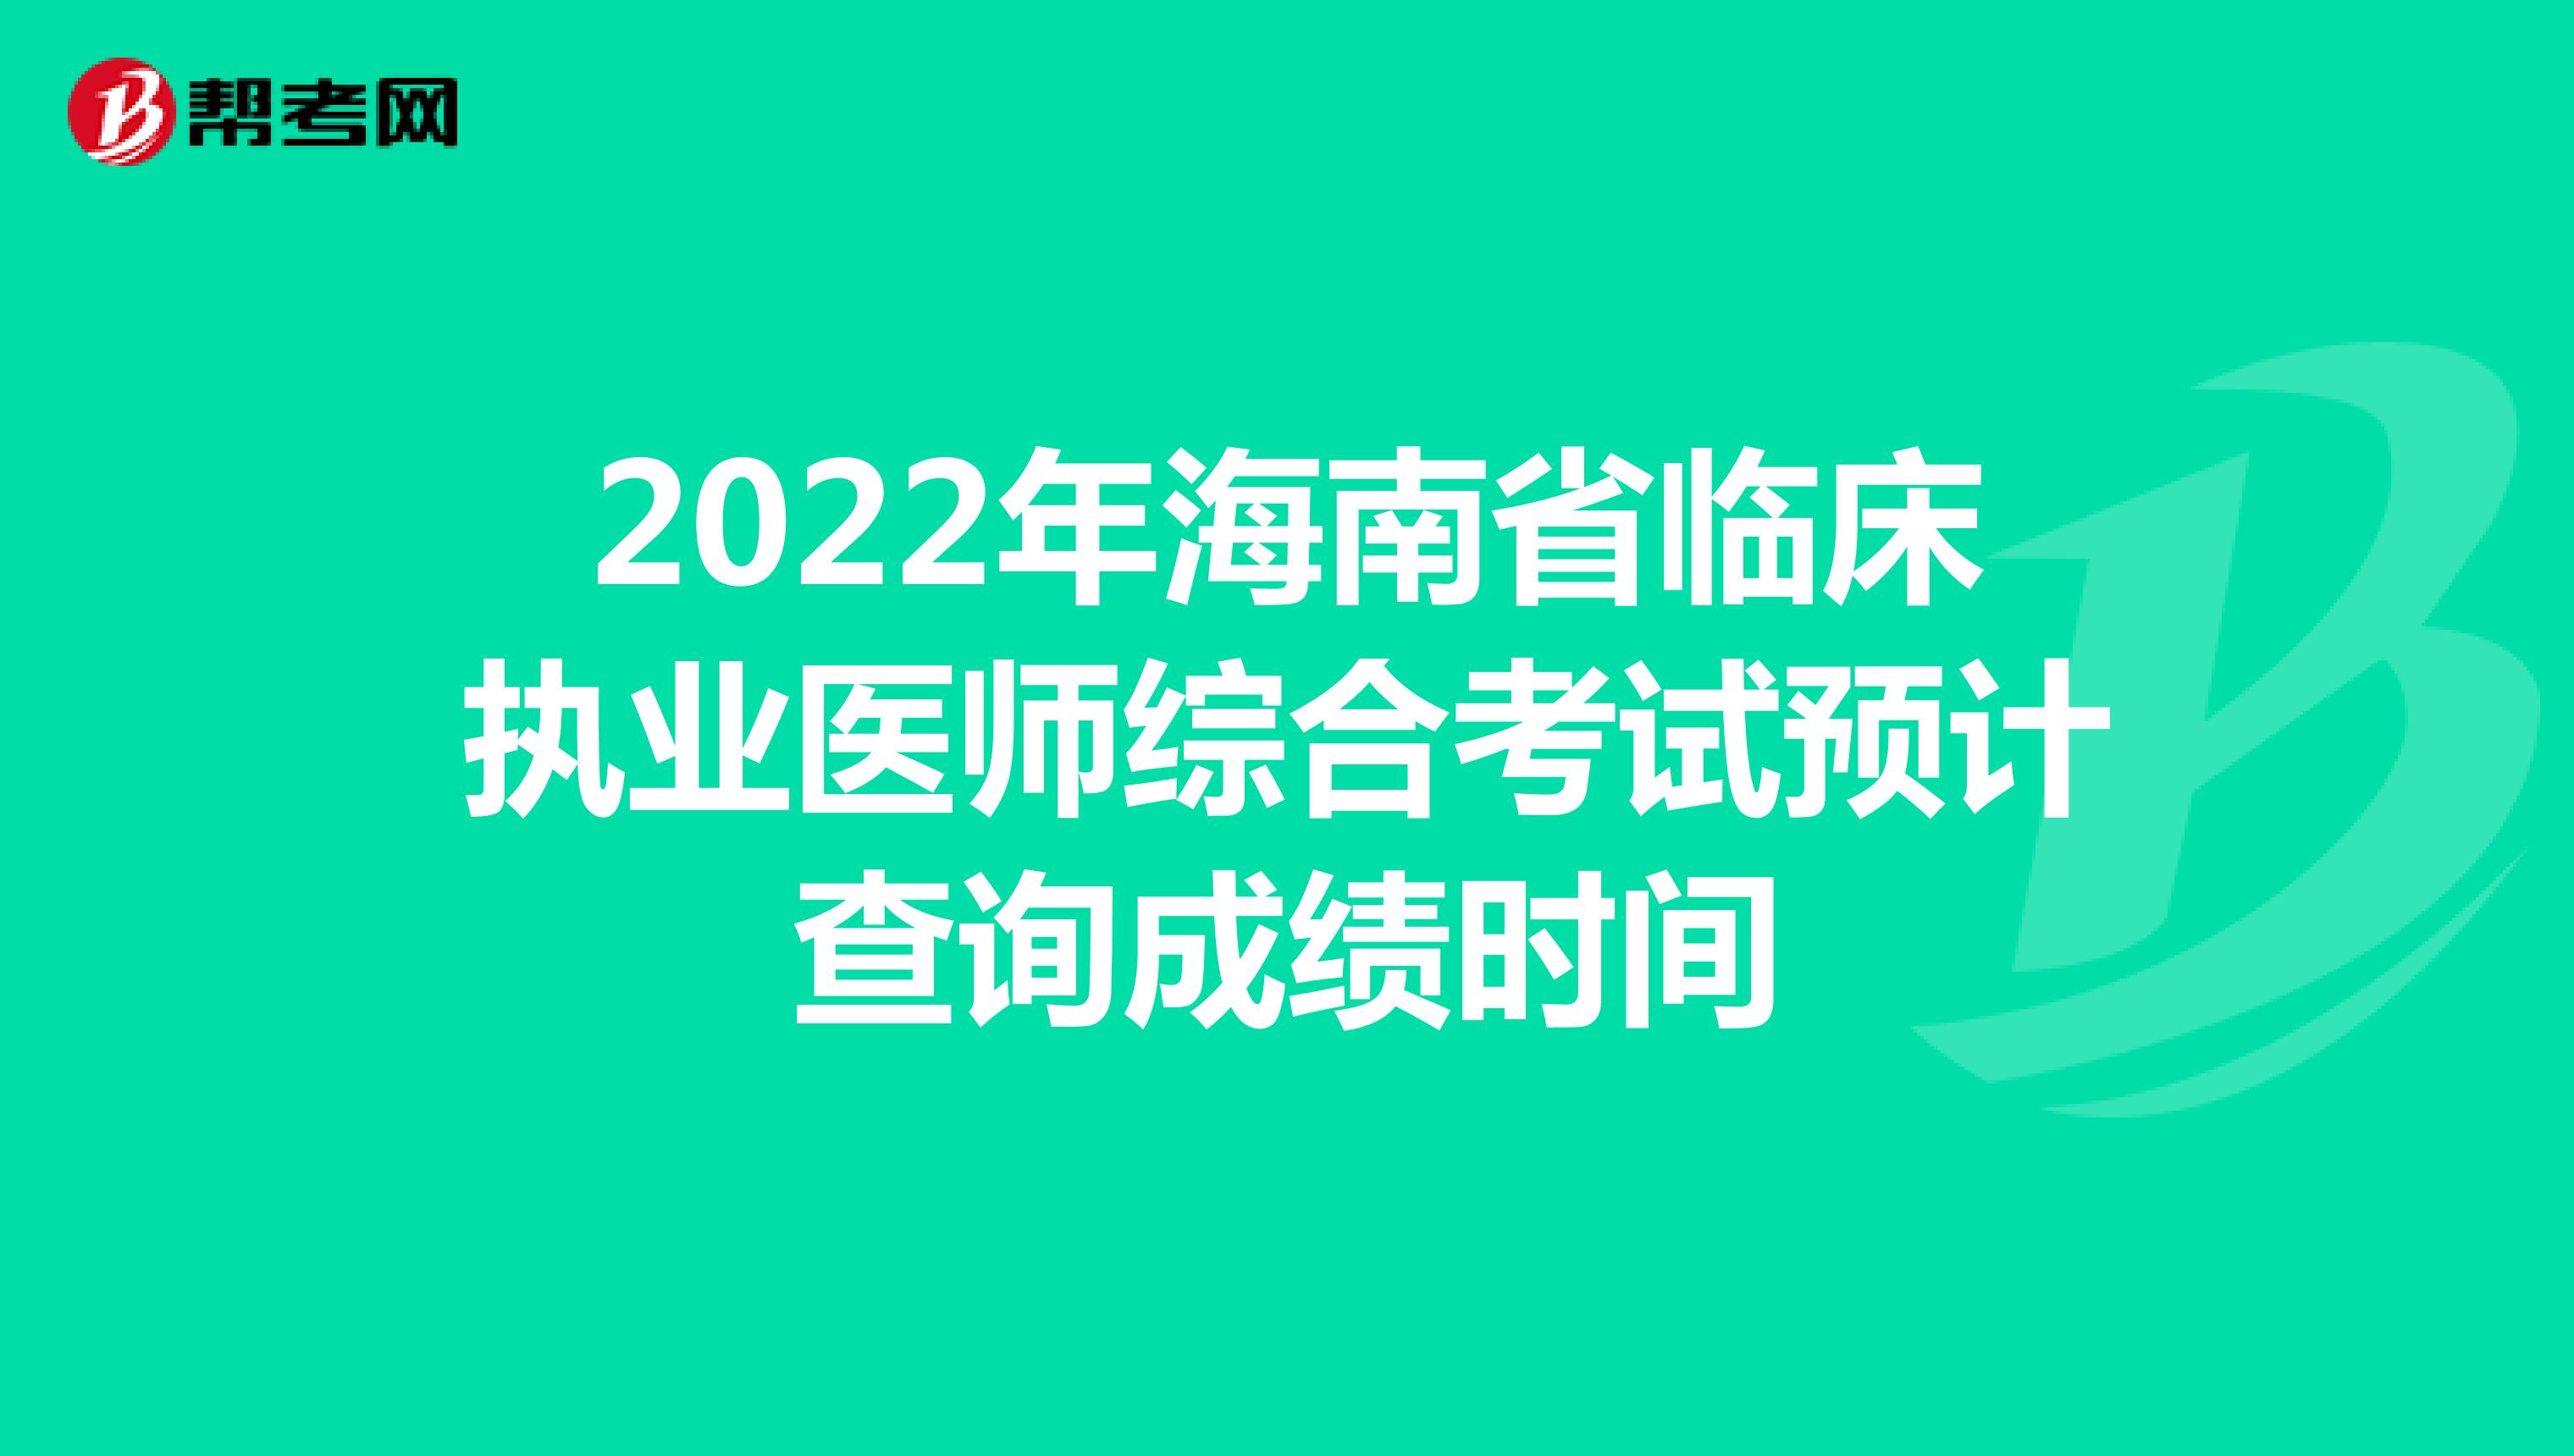 2022年海南省临床执业医师综合考试预计查询成绩时间